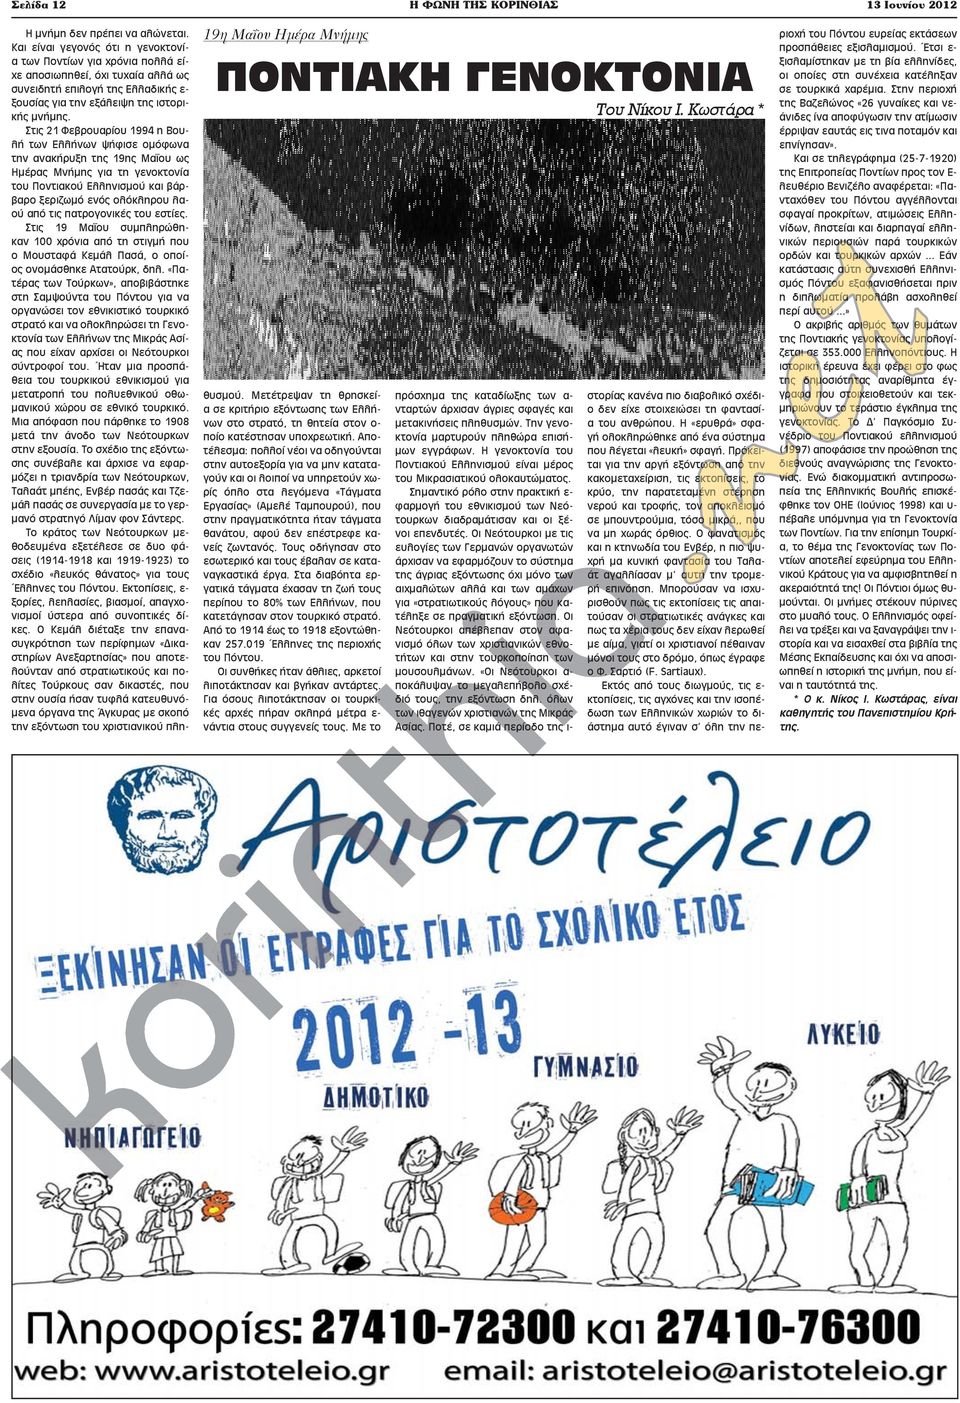 Στις 21 Φεβρουαρίου 1994 η Βουλή των Ελλήνων ψήφισε ομόφωνα την ανακήρυξη της 19ης Μαΐου ως Ημέρας Μνήμης για τη γενοκτονία του Ποντιακού Ελληνισμού και βάρβαρο ξεριζωμό ενός ολόκληρου λαού από τις